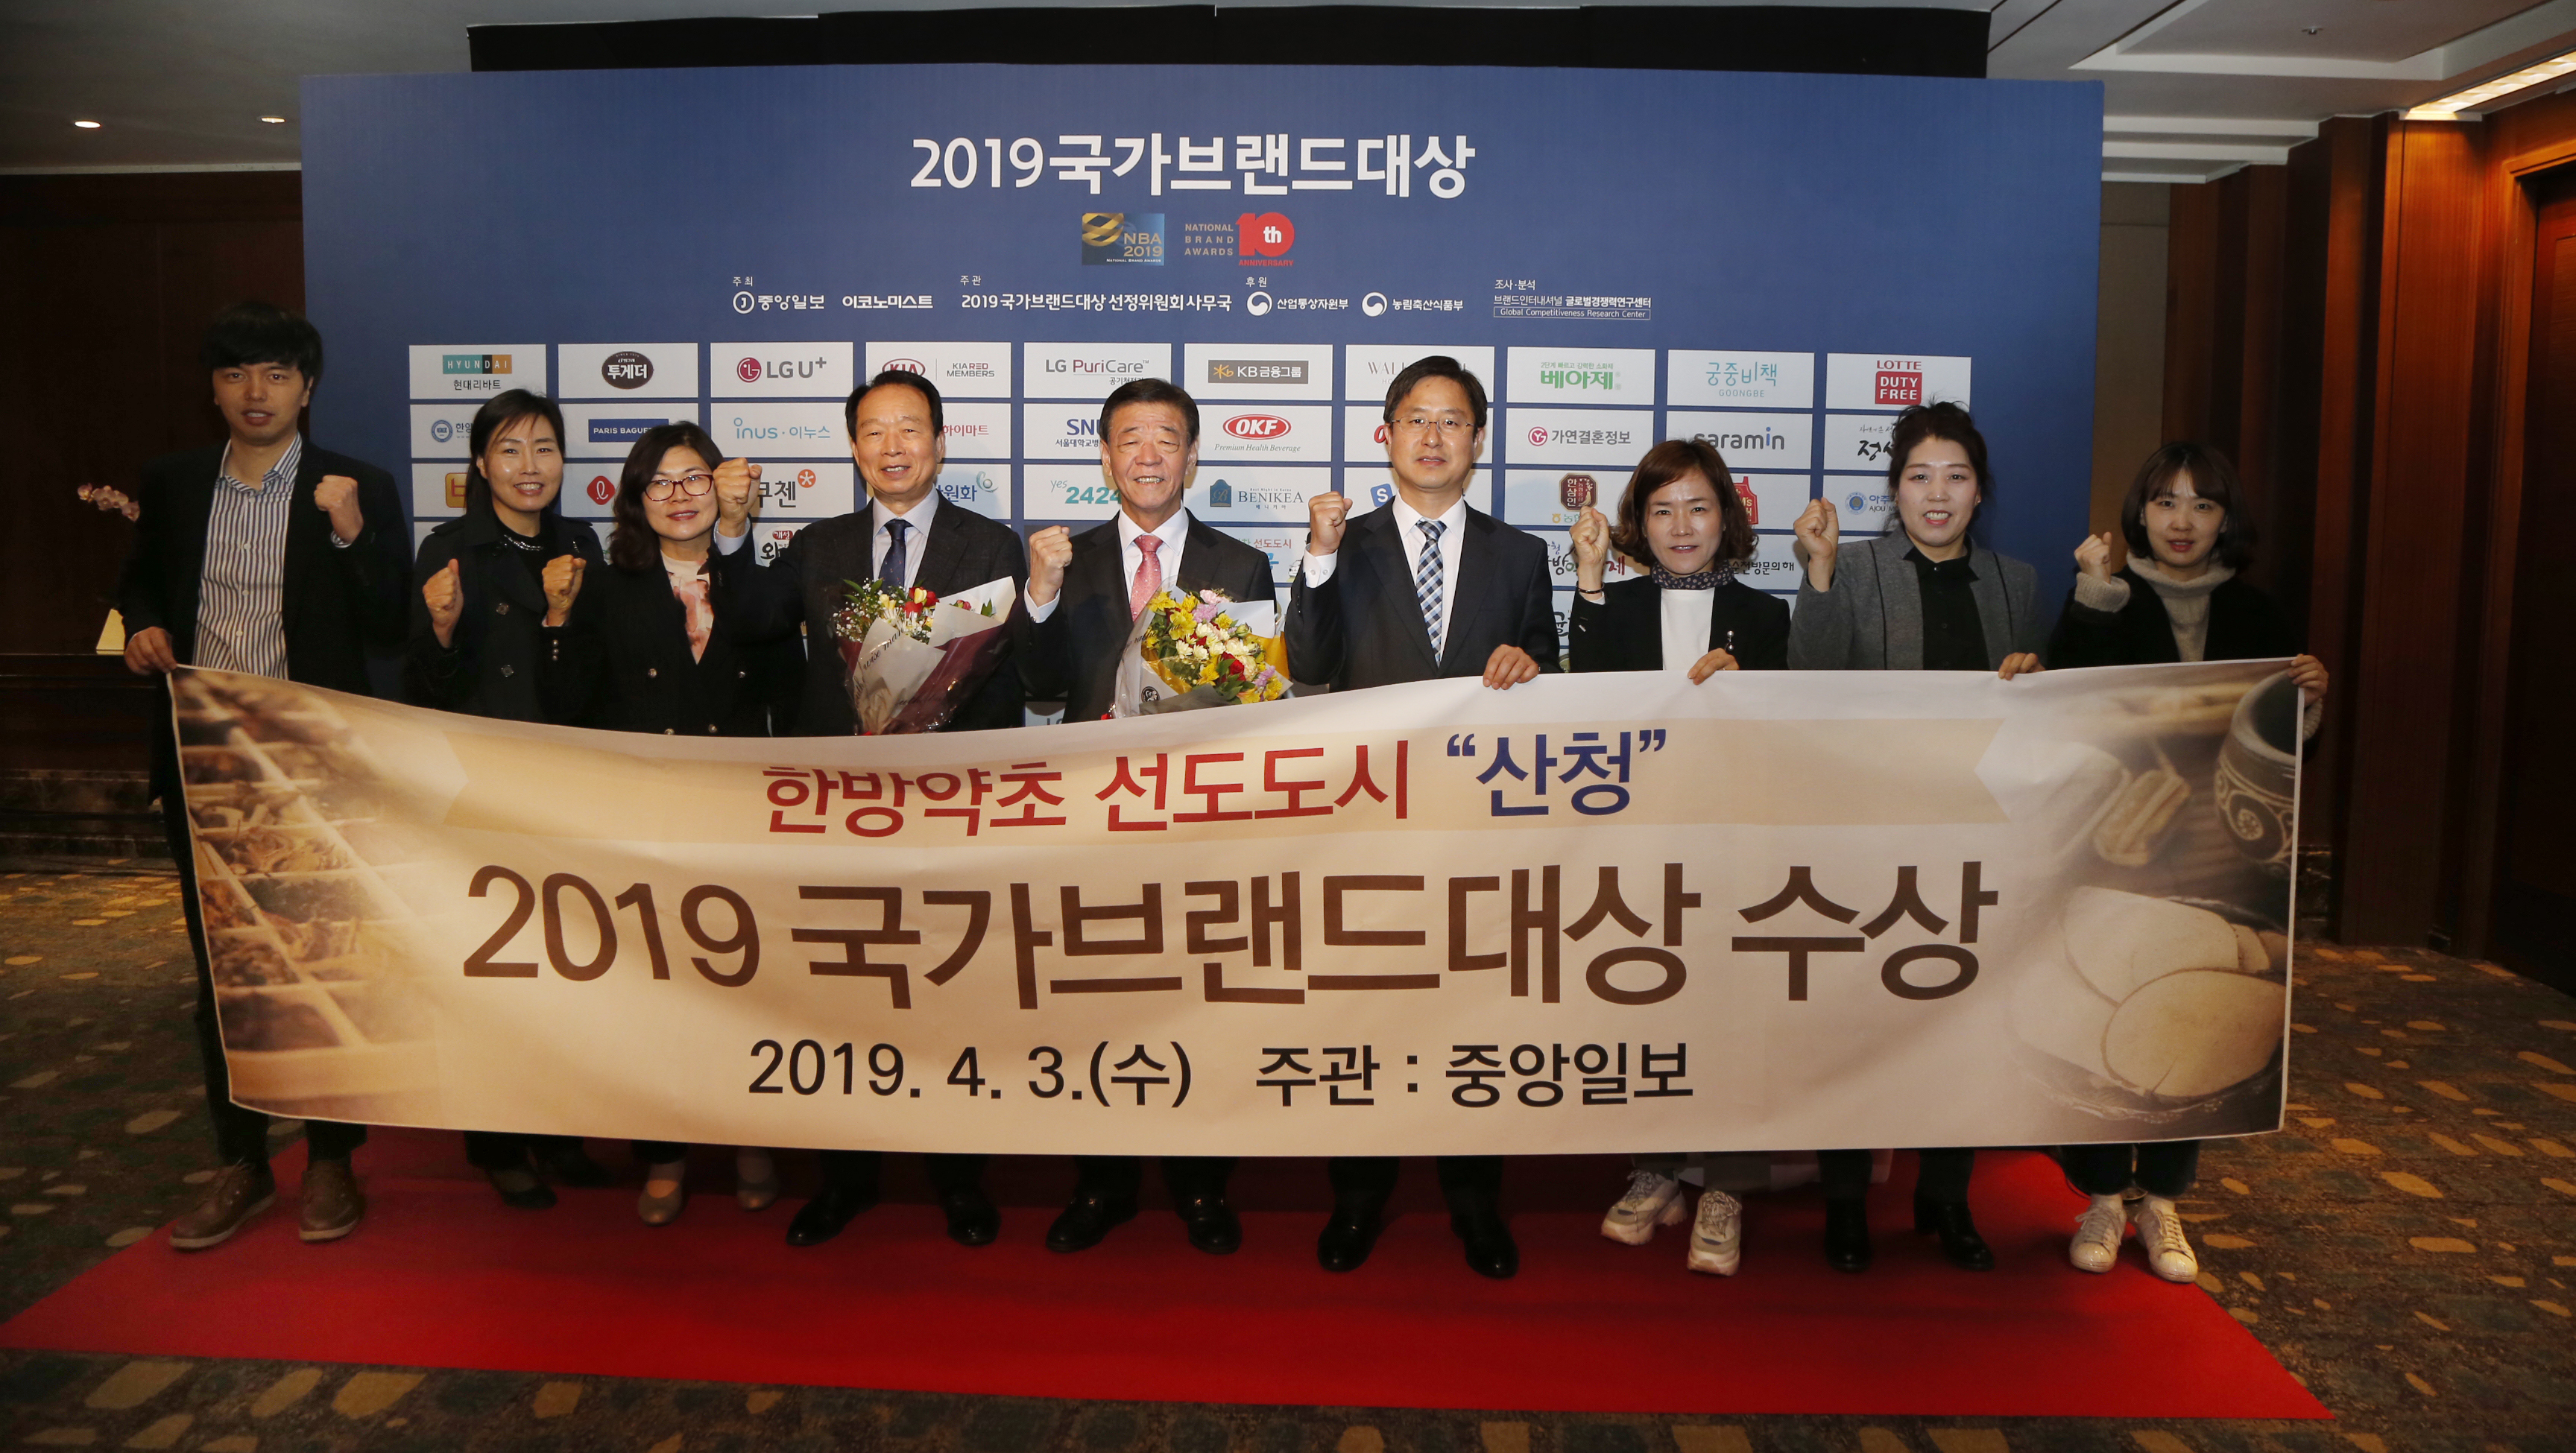 2019 국가브랜드대상 “한방약초 선도도시” 선정 2